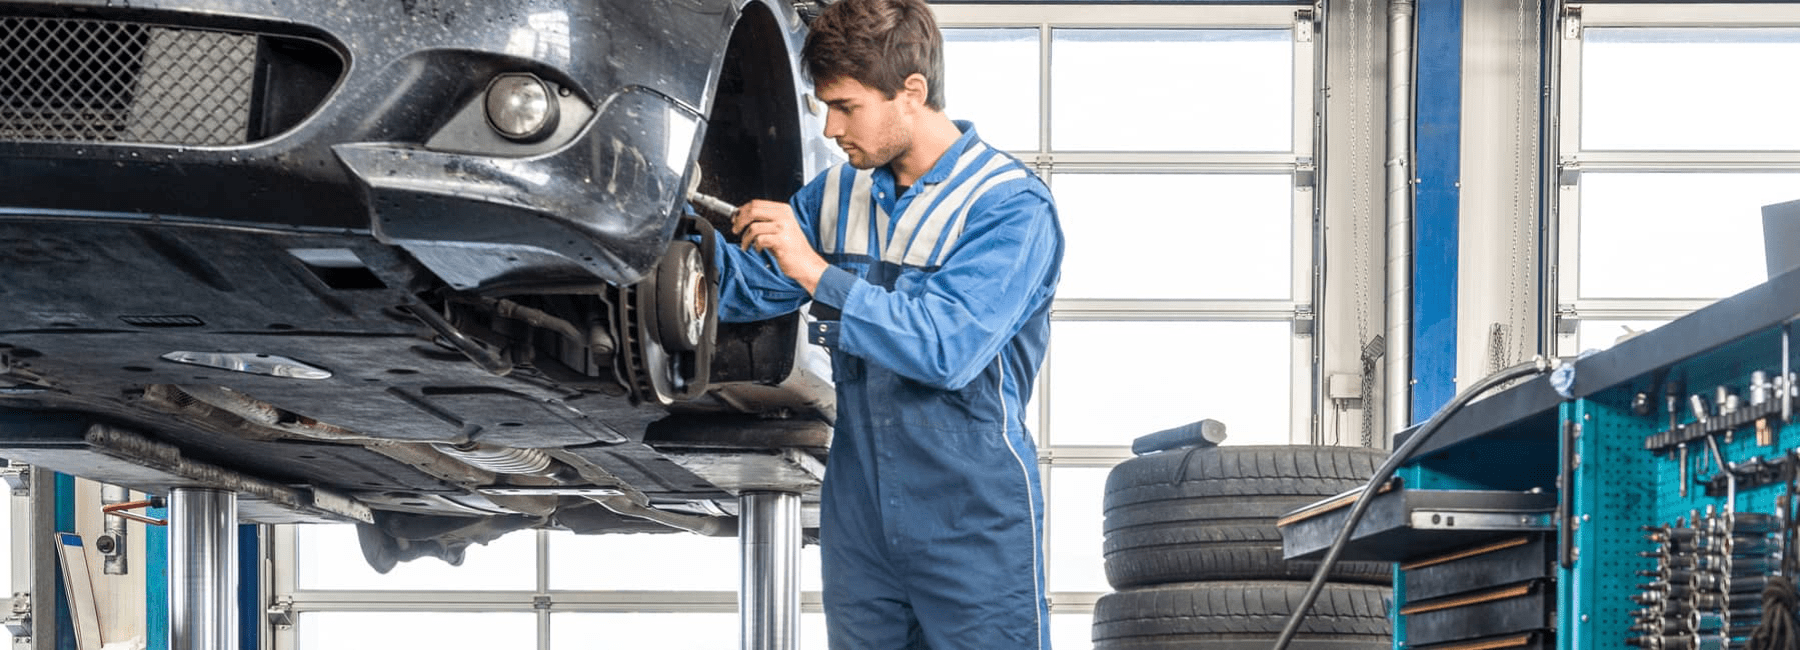 mechanic-repairs-car-brakes-in-service-bay